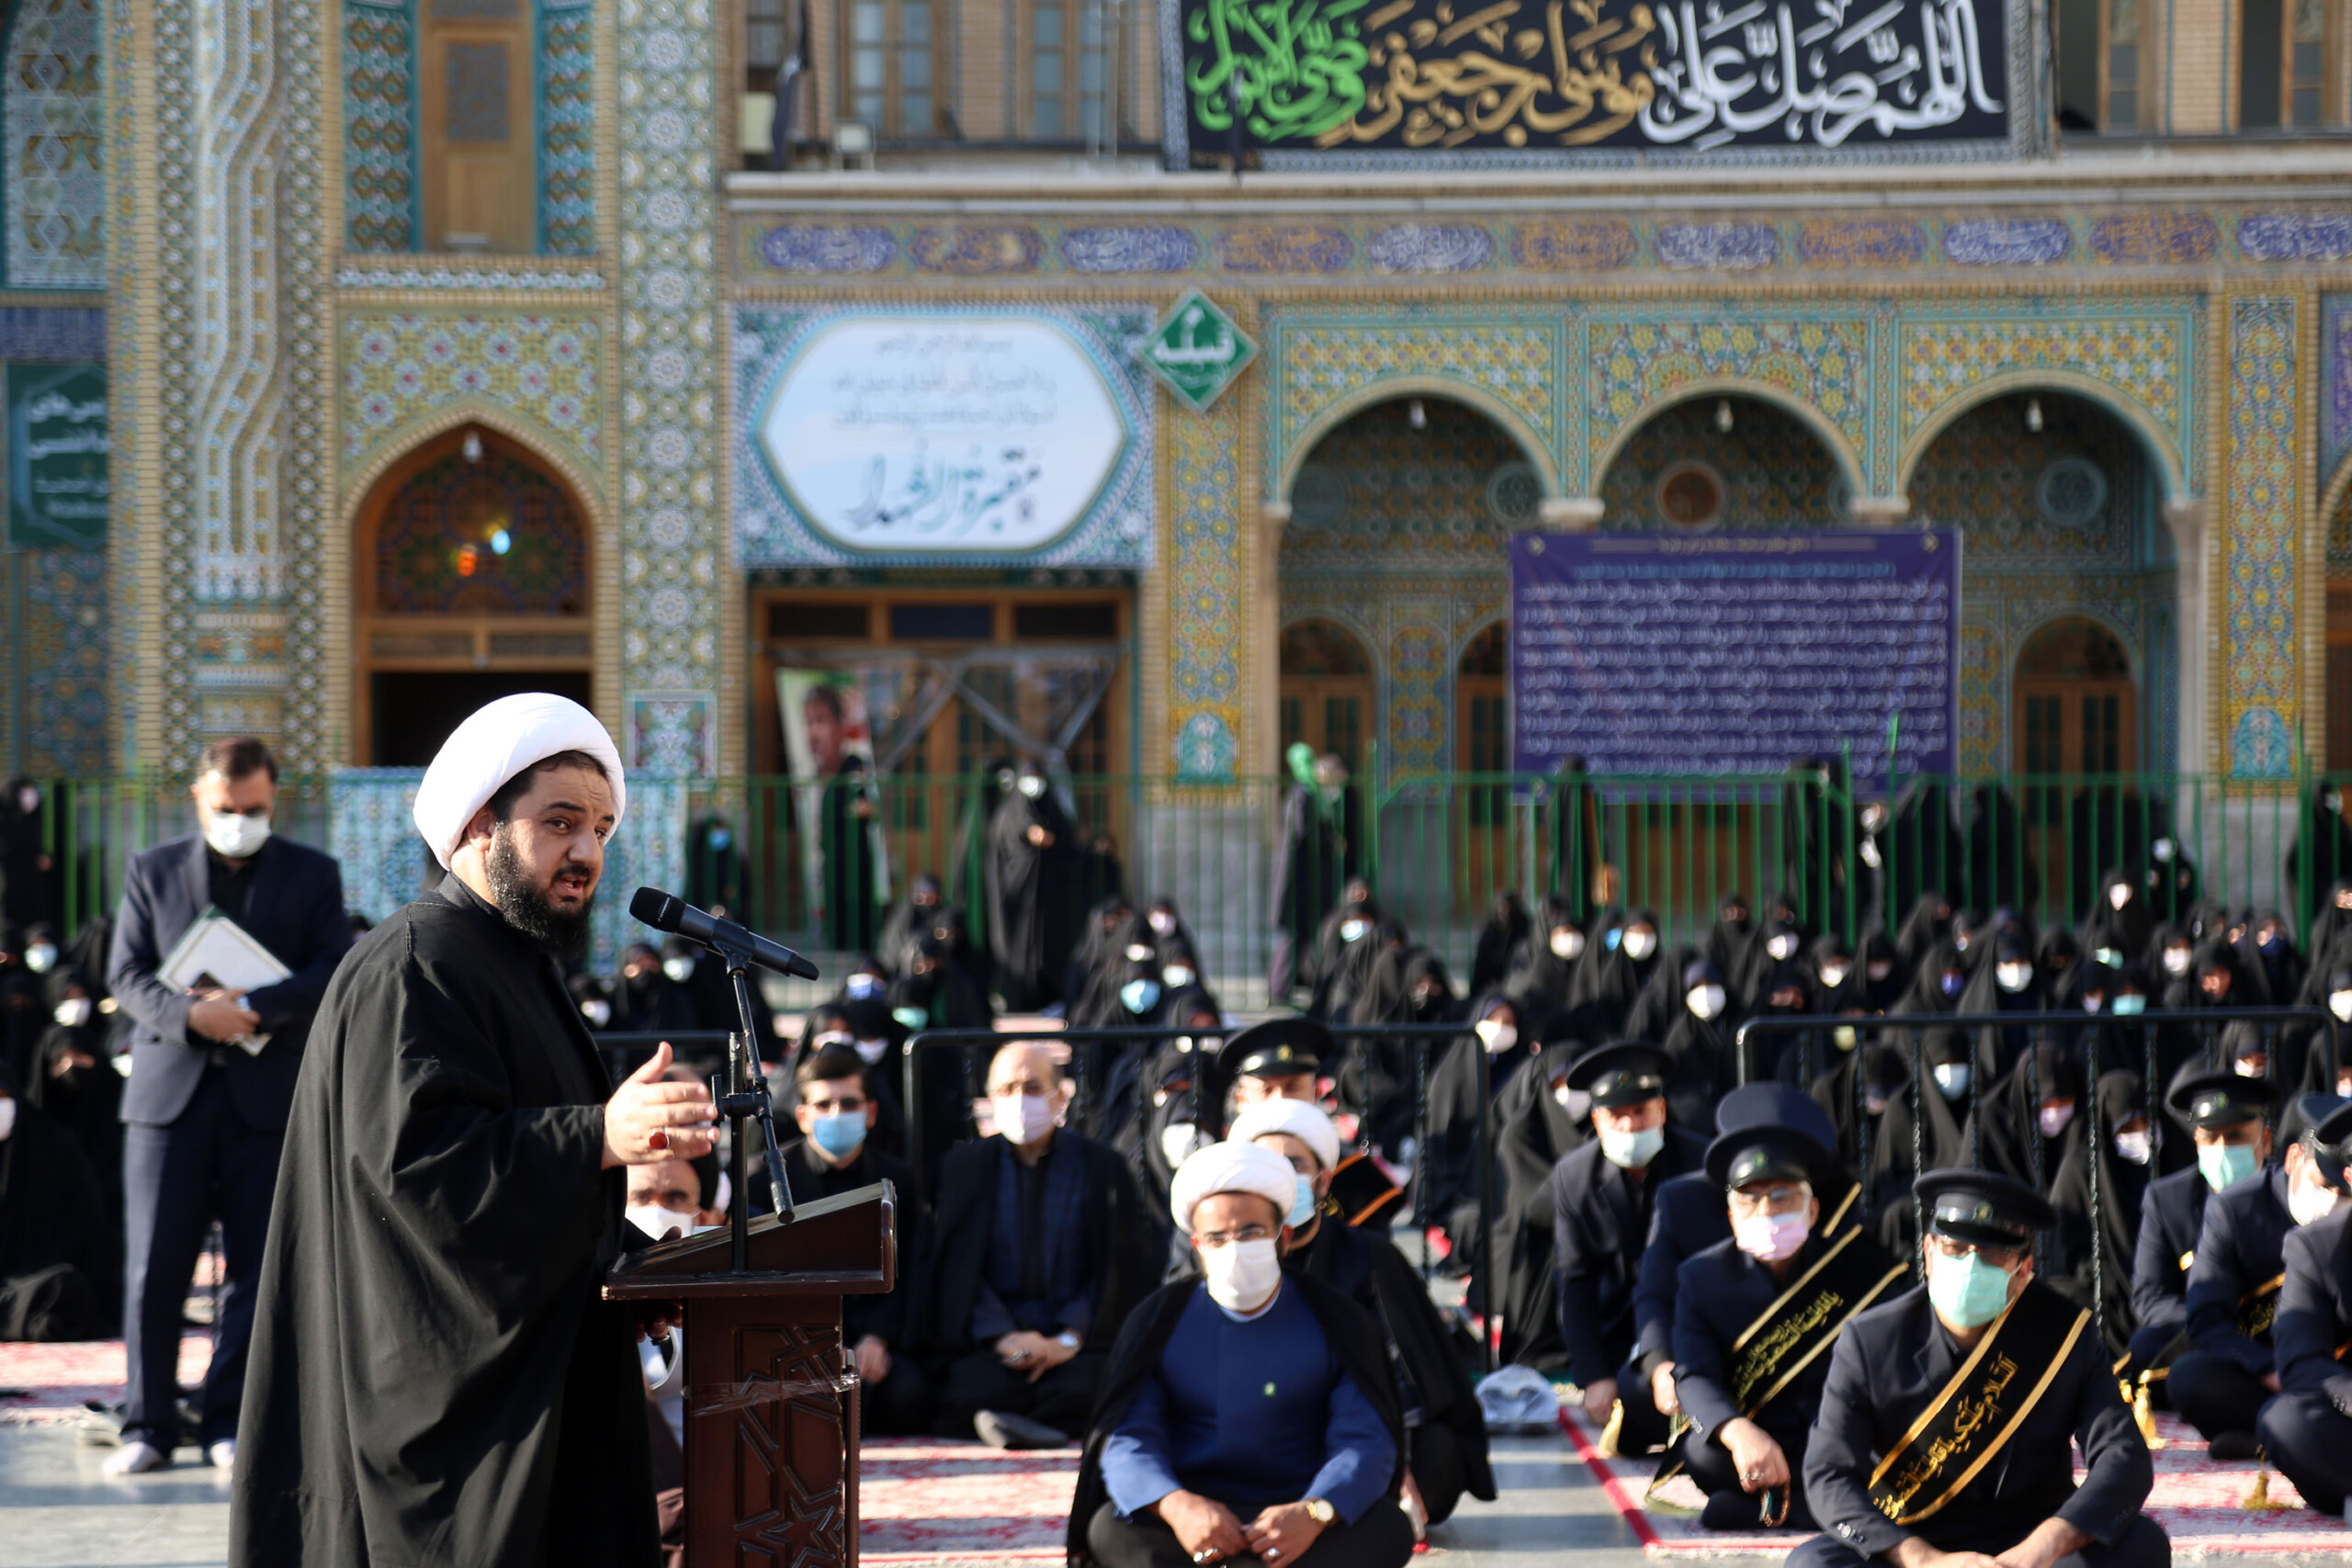 informe fotográfico / Ceremonia de lectura del sermón de los sirvientes del santuario sagrado de la santa Fatima Masuma (as) en el aniversario del martirio de Hazrat Musa ibn Ja’far (as)